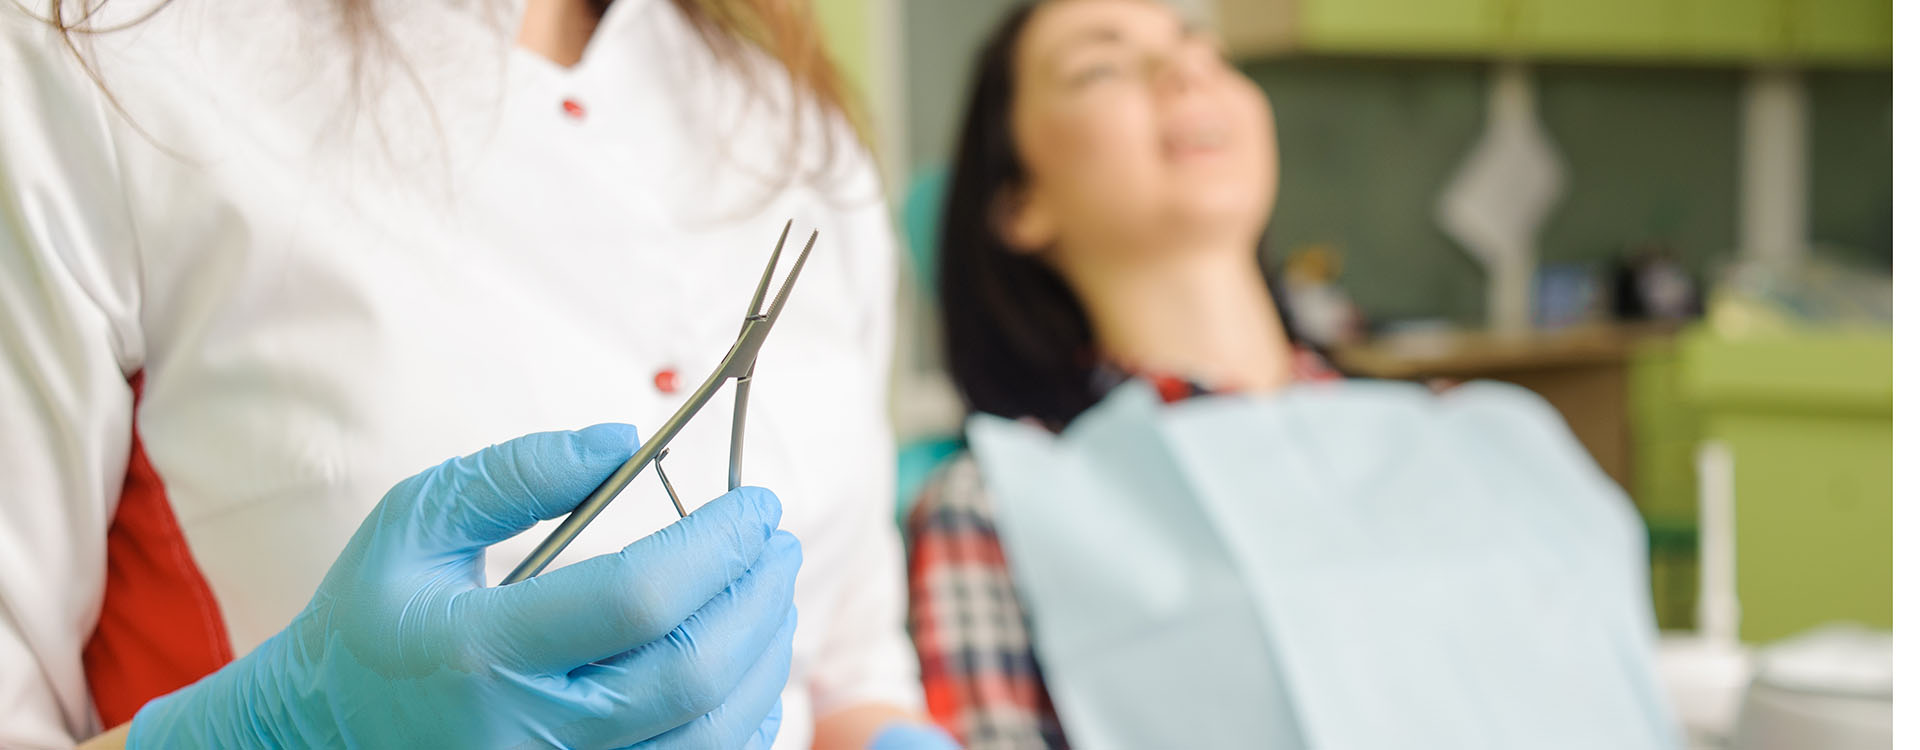 Clínica Dental Andrea Compte, tu Centro Odontológico especializado. Ortodoncia en Cervera del Maestre. Dentista realizando un tratamiento ortodóntico.